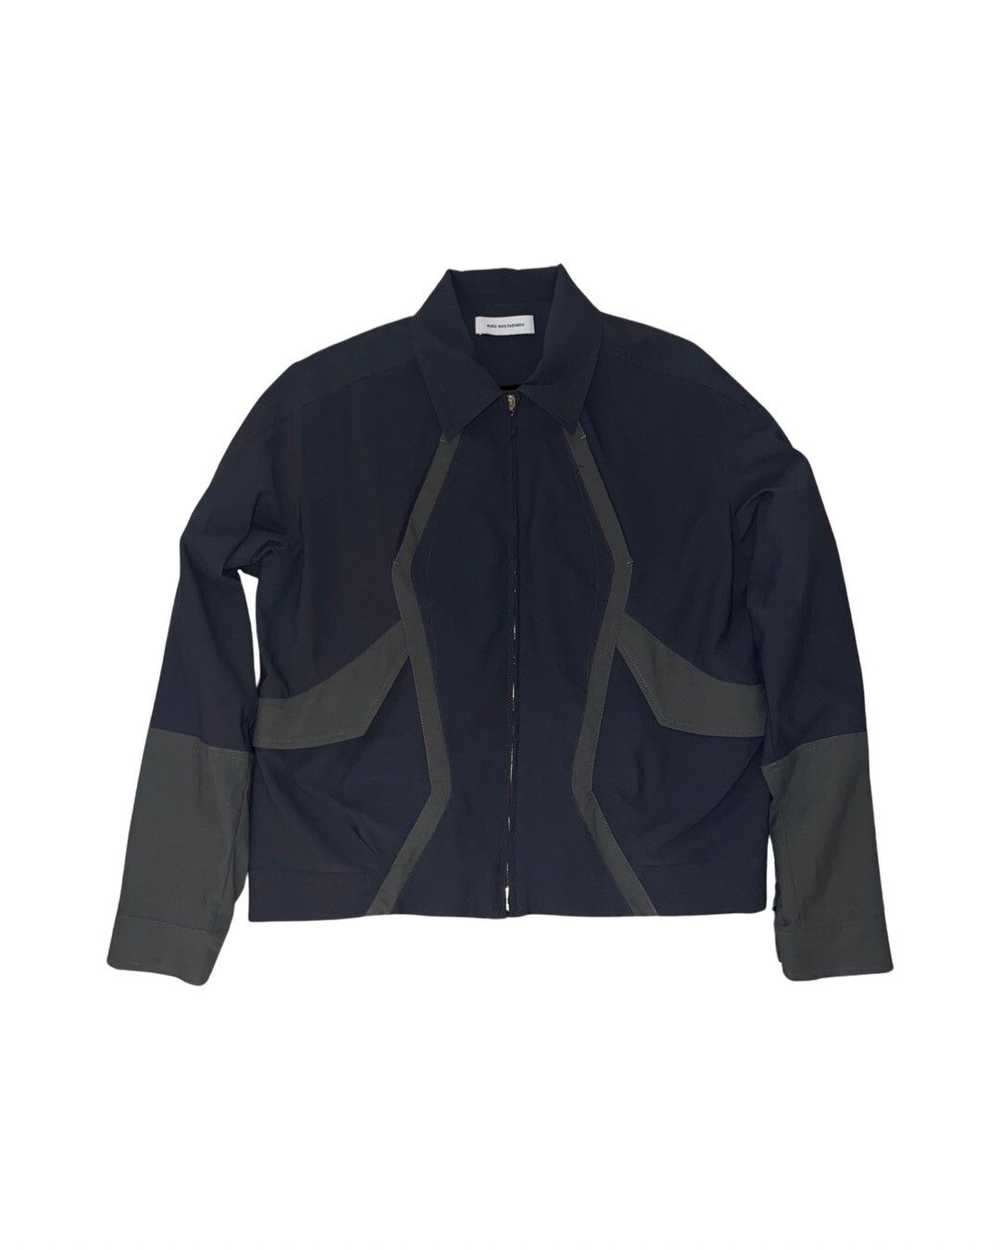 Asics Kobe uniform jacket - image 2